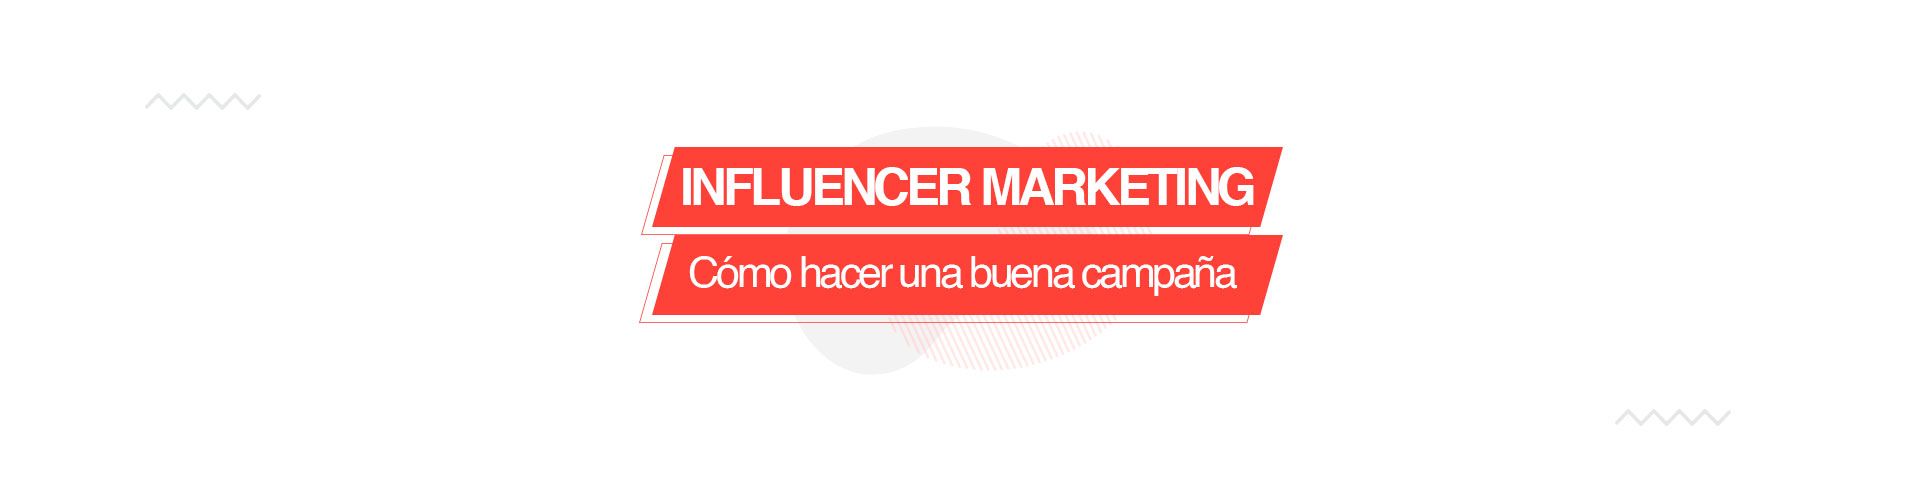 influencers2 Cómo hacer una buena campaña de Influencer Marketing